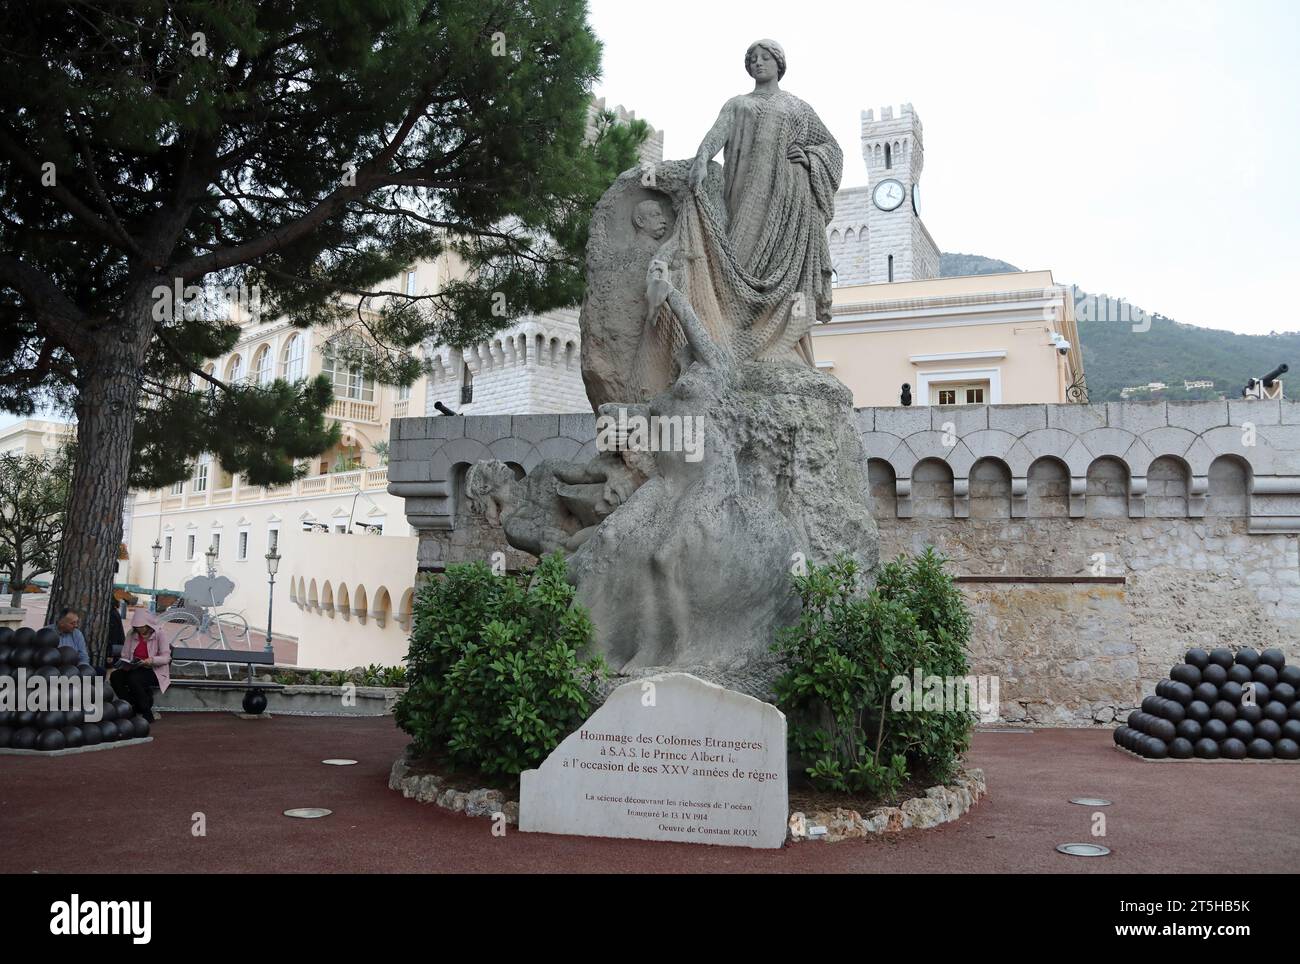 Hommage de Colonies Etrangeres sculpture in Monaco Stock Photo